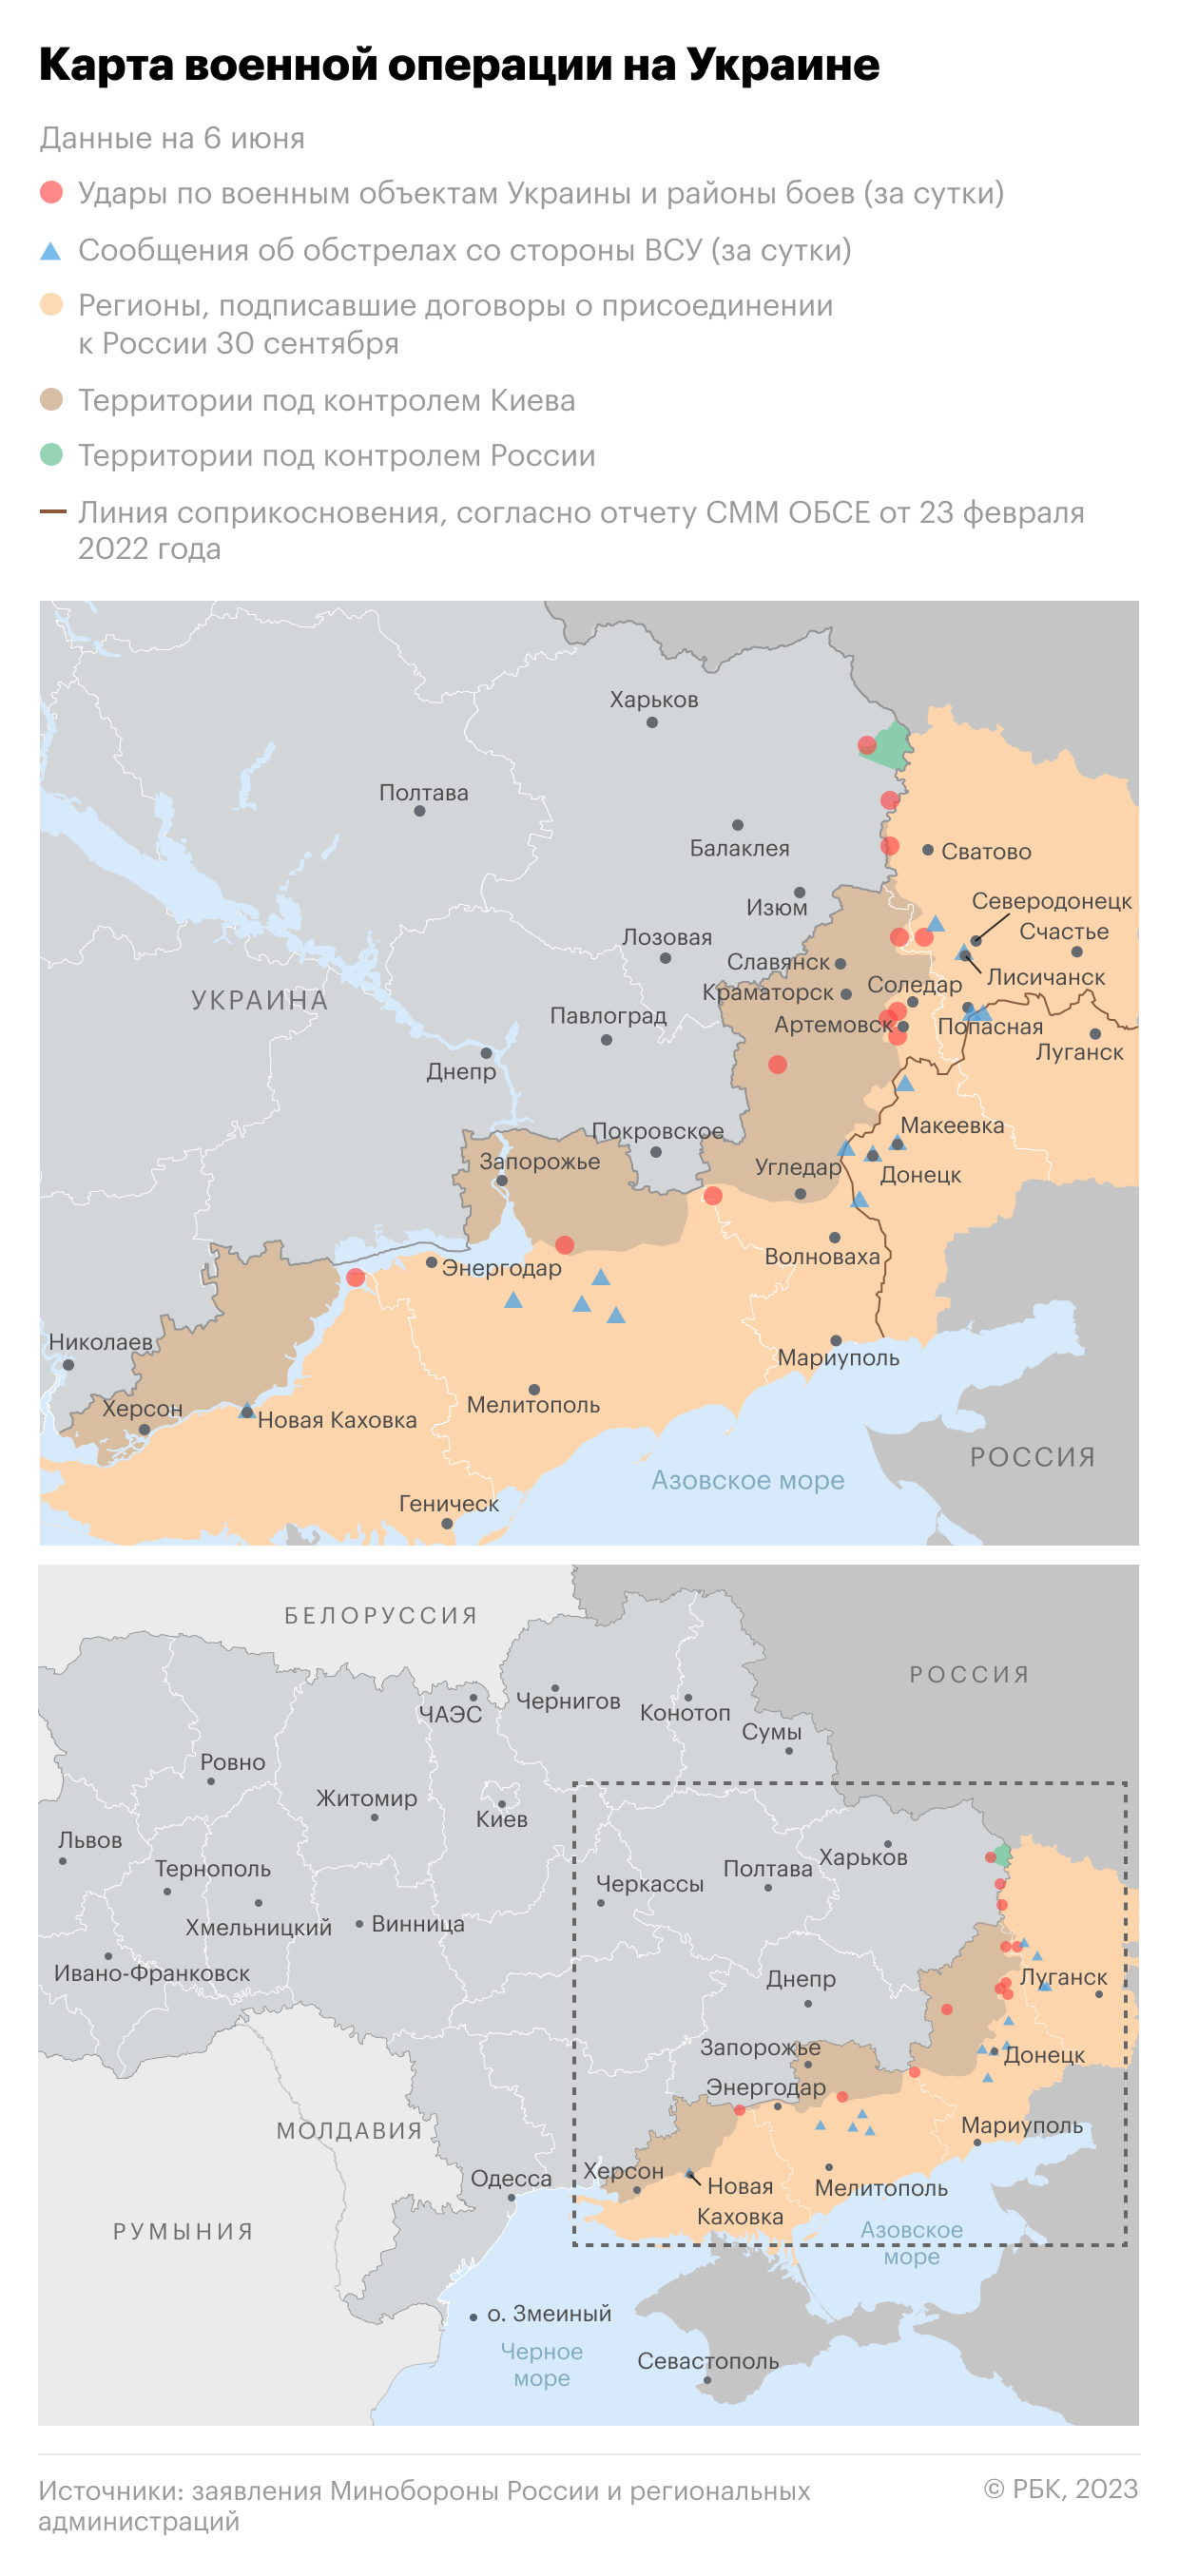 Военная операция на Украине. Карта на 6 июня